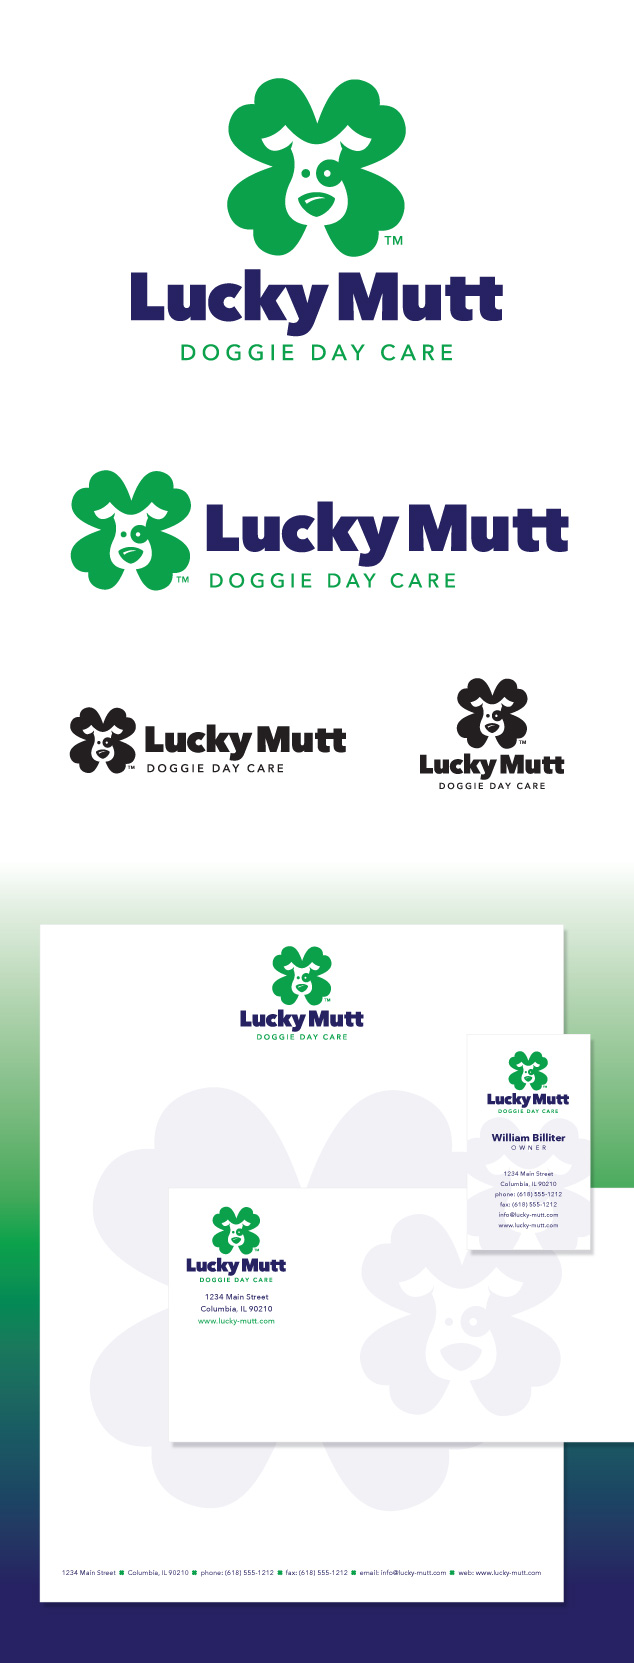 lucky mutt logo design